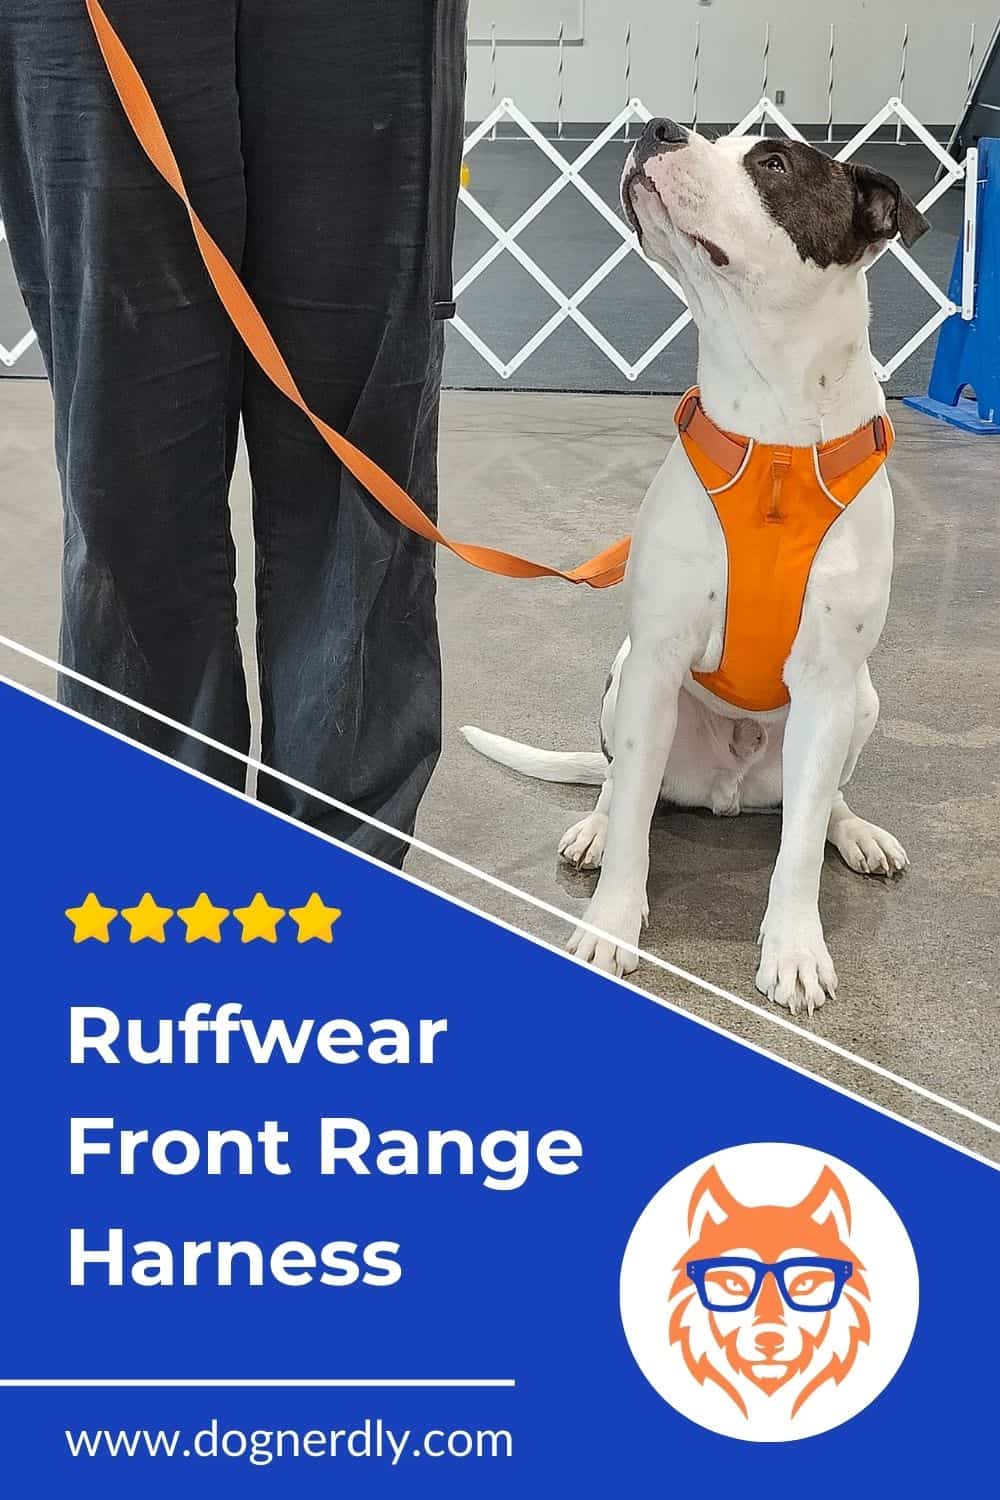 Expert Review: Ruffwear Front Range Harness